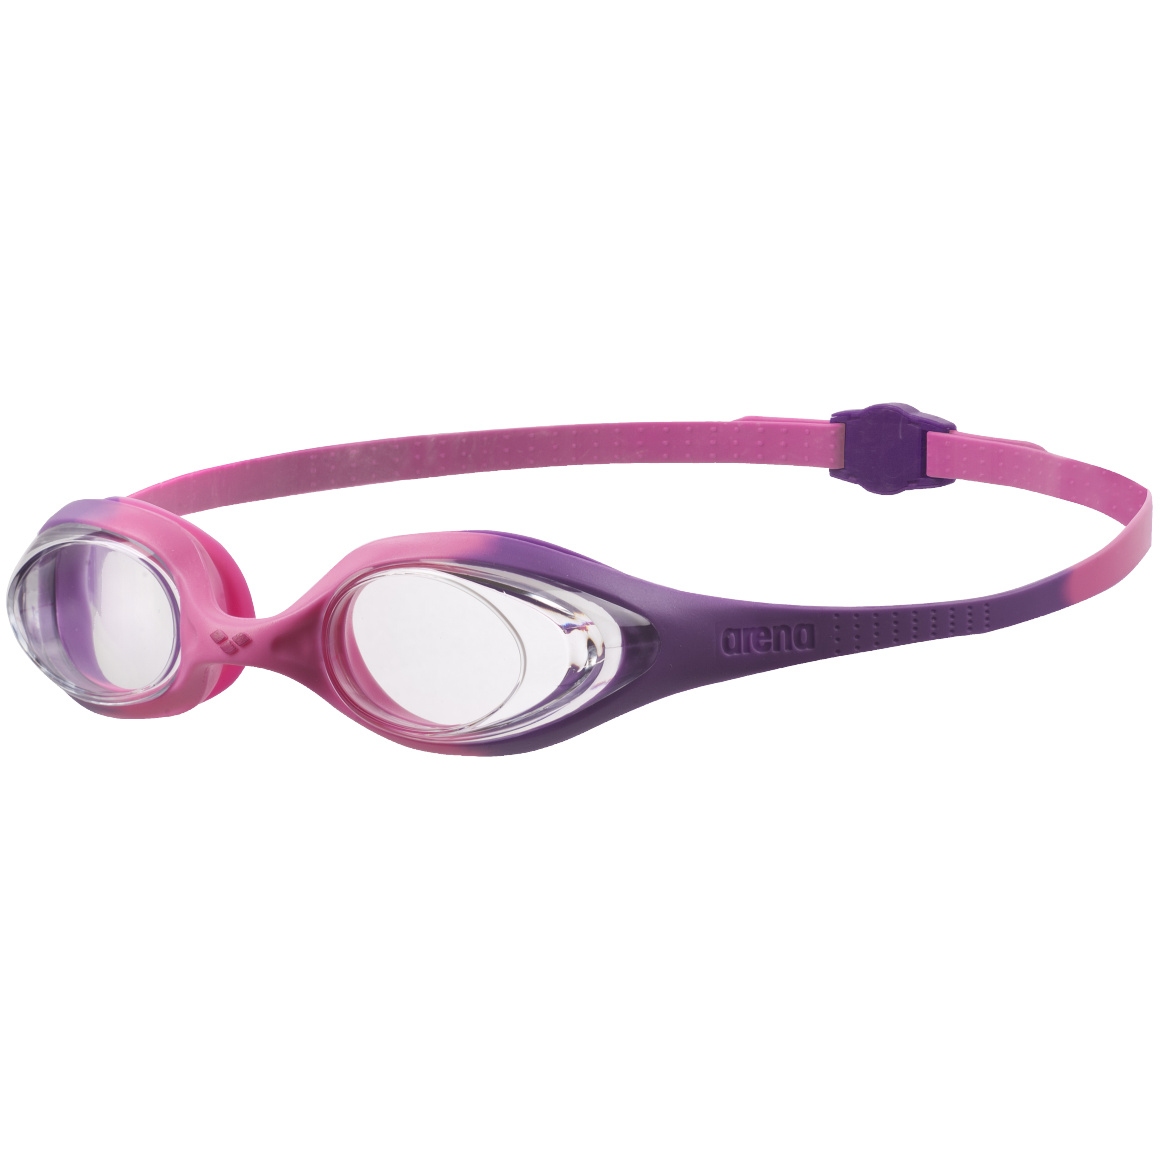 Produktbild von arena Spider Schwimmbrille Kinder - Klar - violet-pink